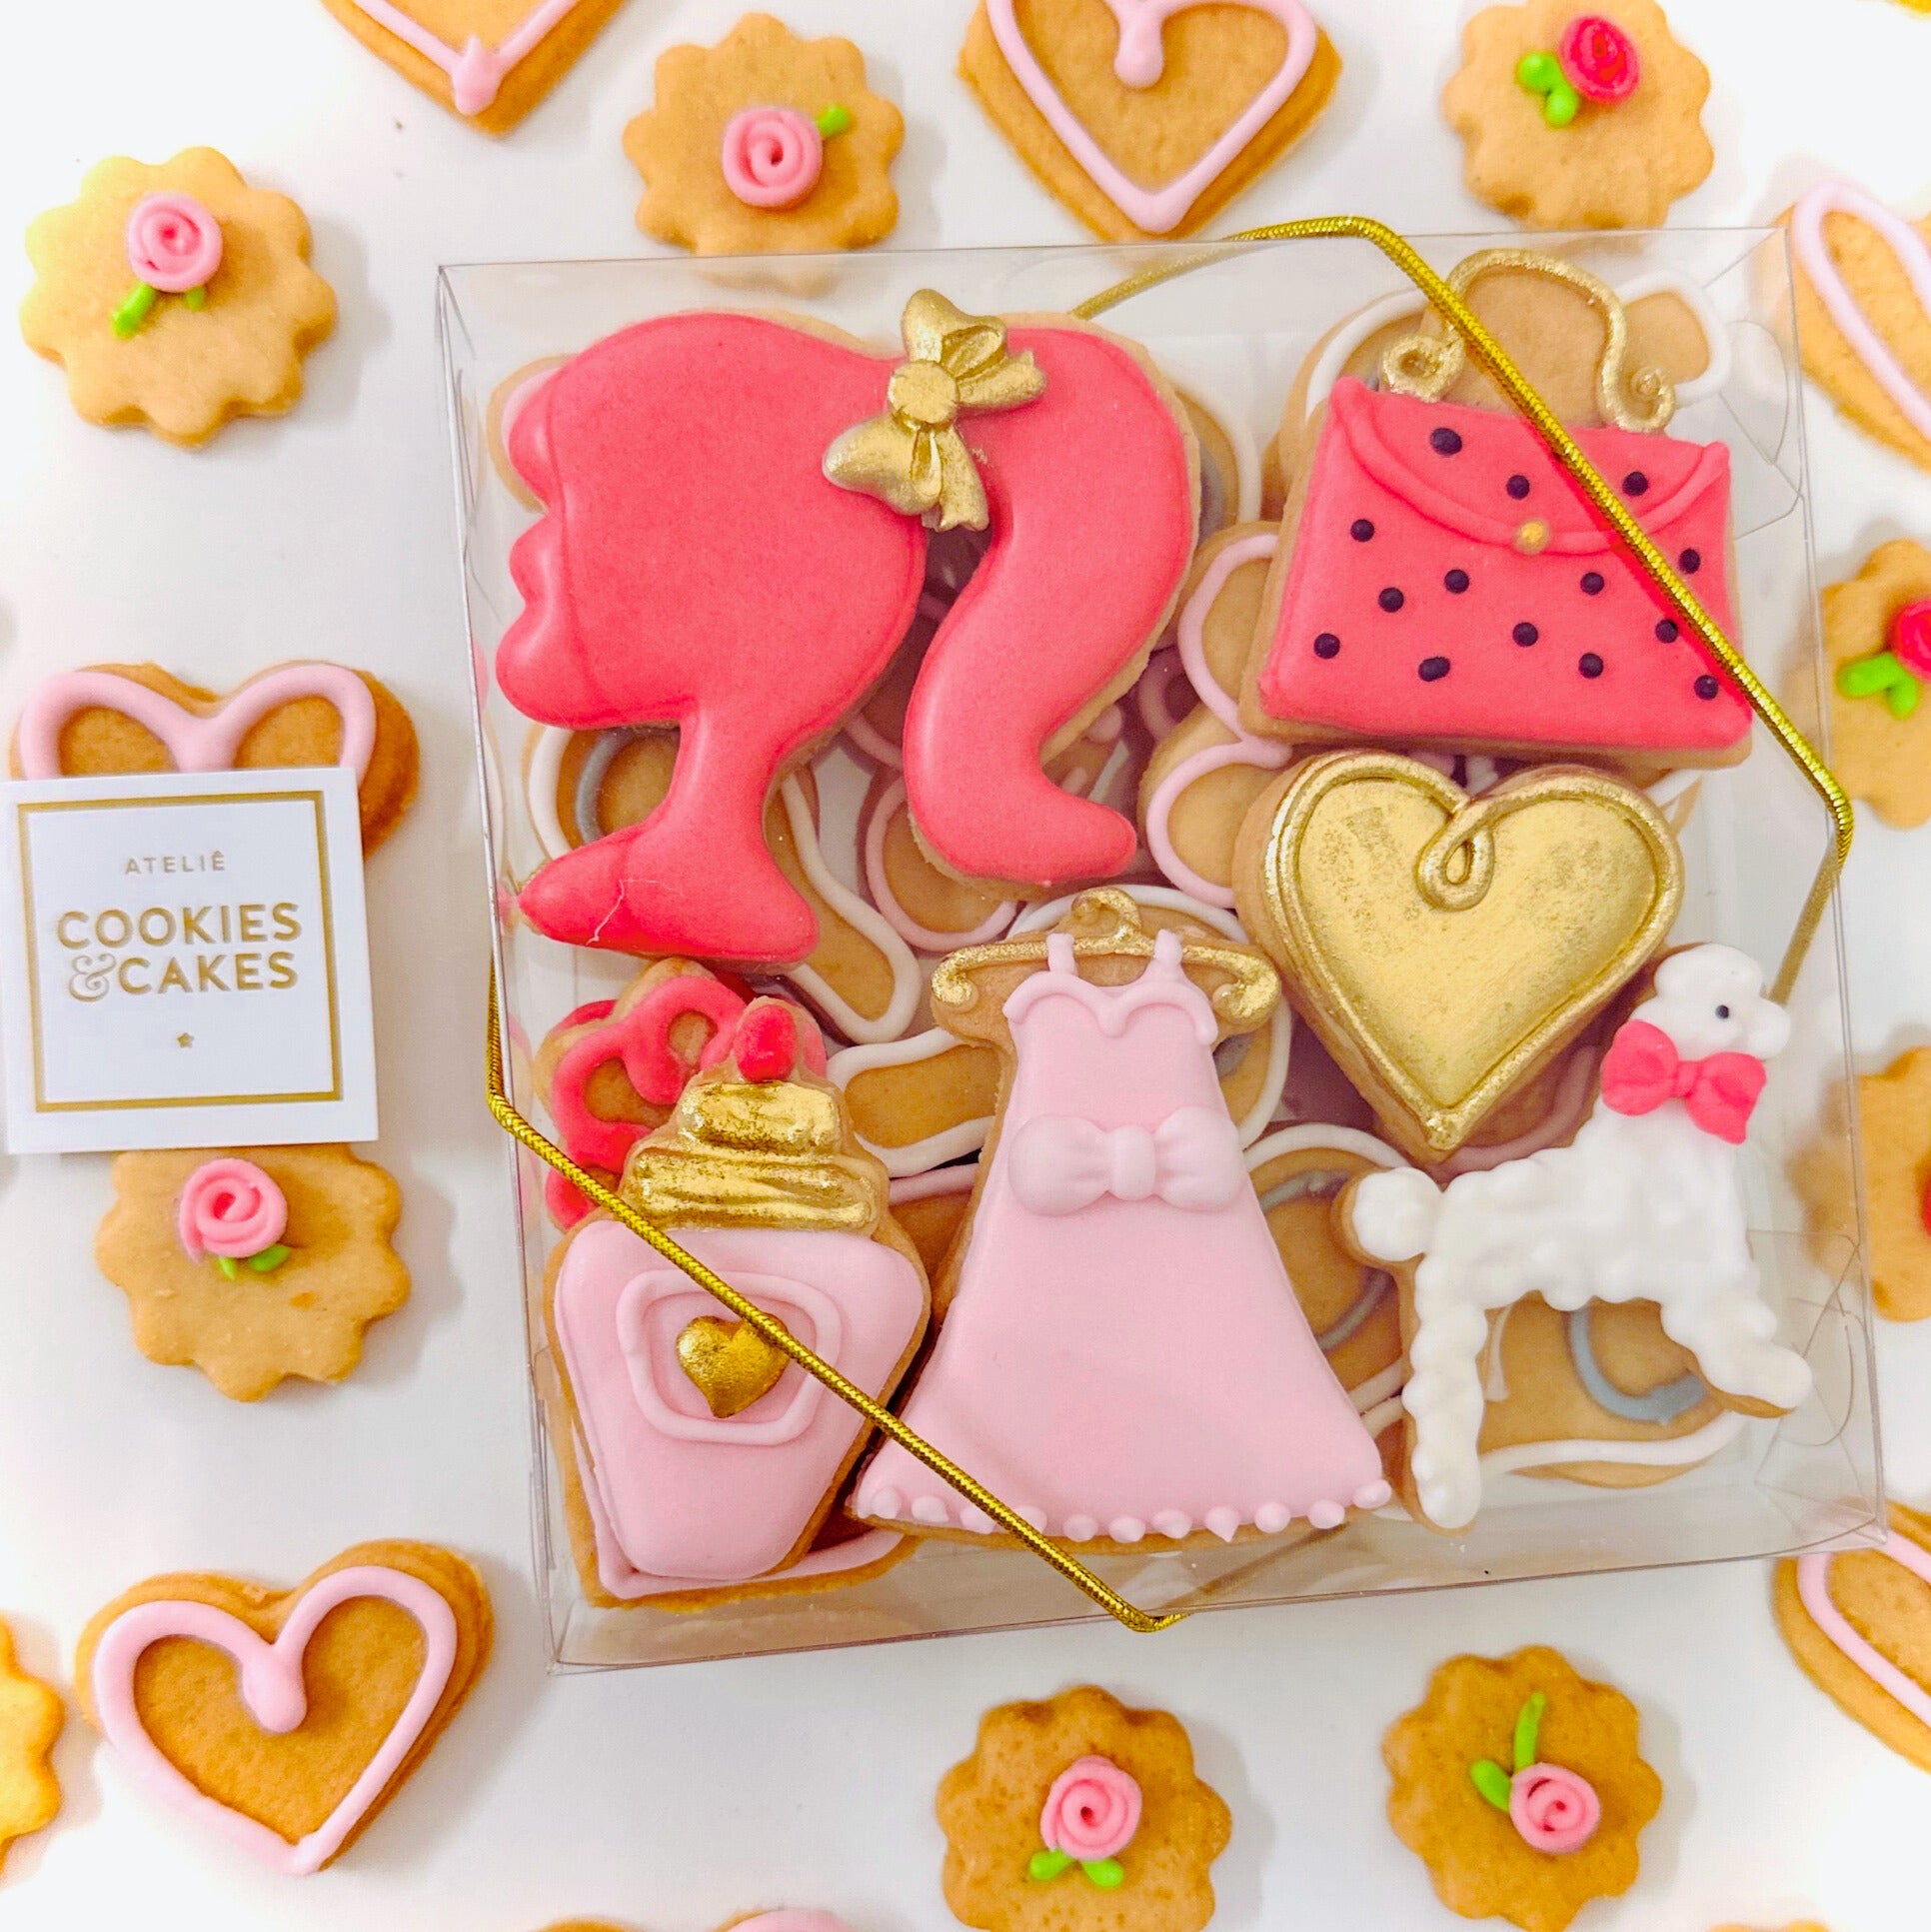 Caixa biscoitos Decorados Boneca Rosa 140g – Atelie Cookies Cakes